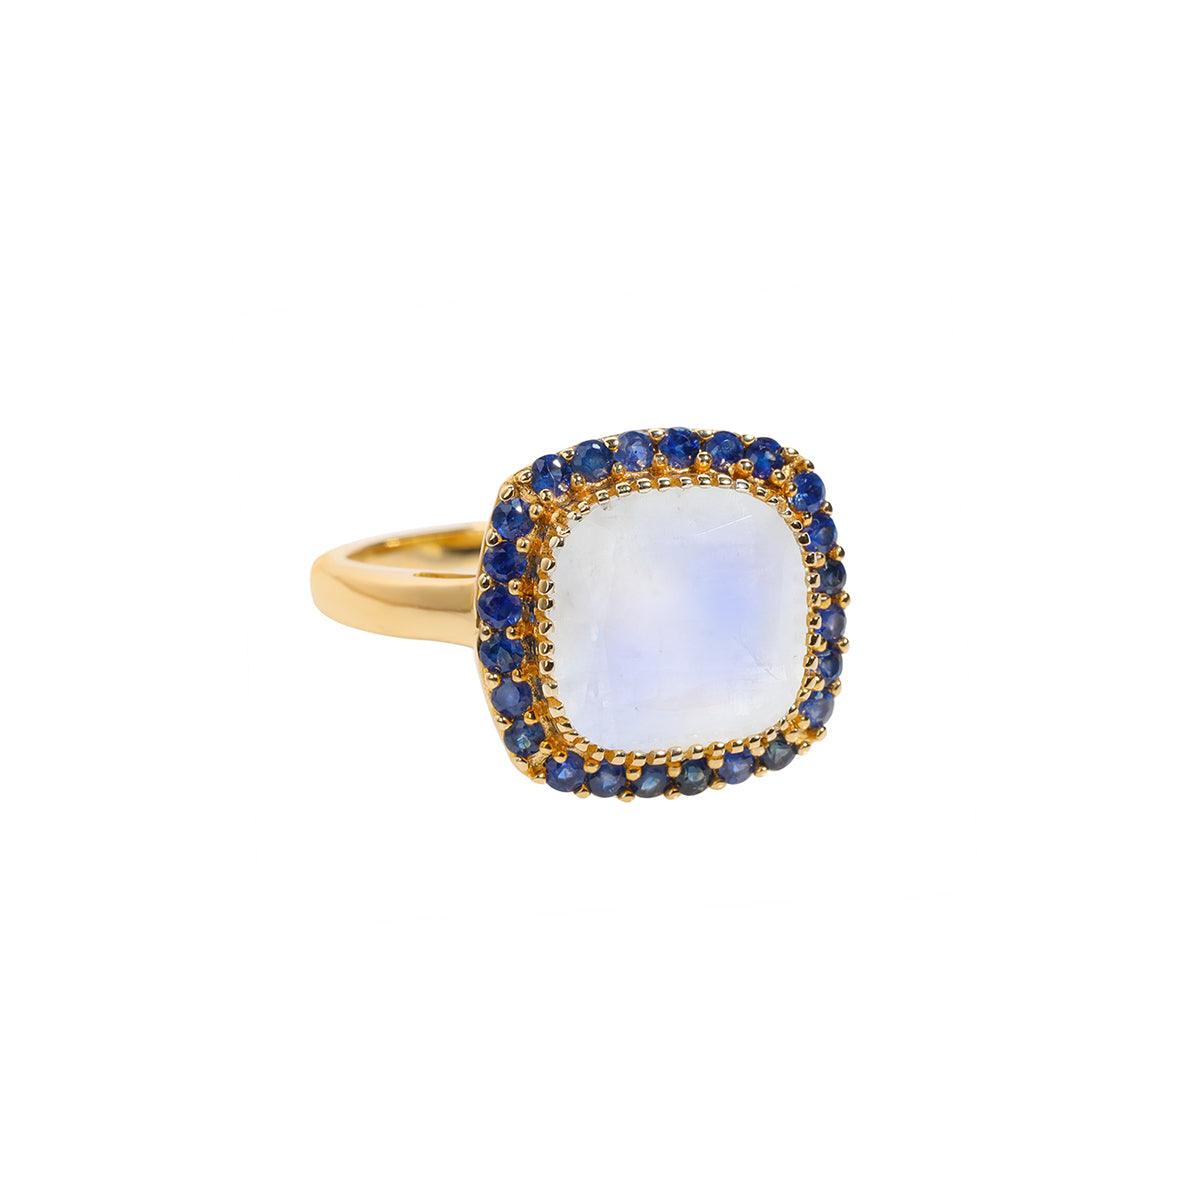 3.28 Ct. Rainbow Moonstone Blue Sapphire Ring 14K Yellow Gold Gemstone Jewelry - YoTreasure